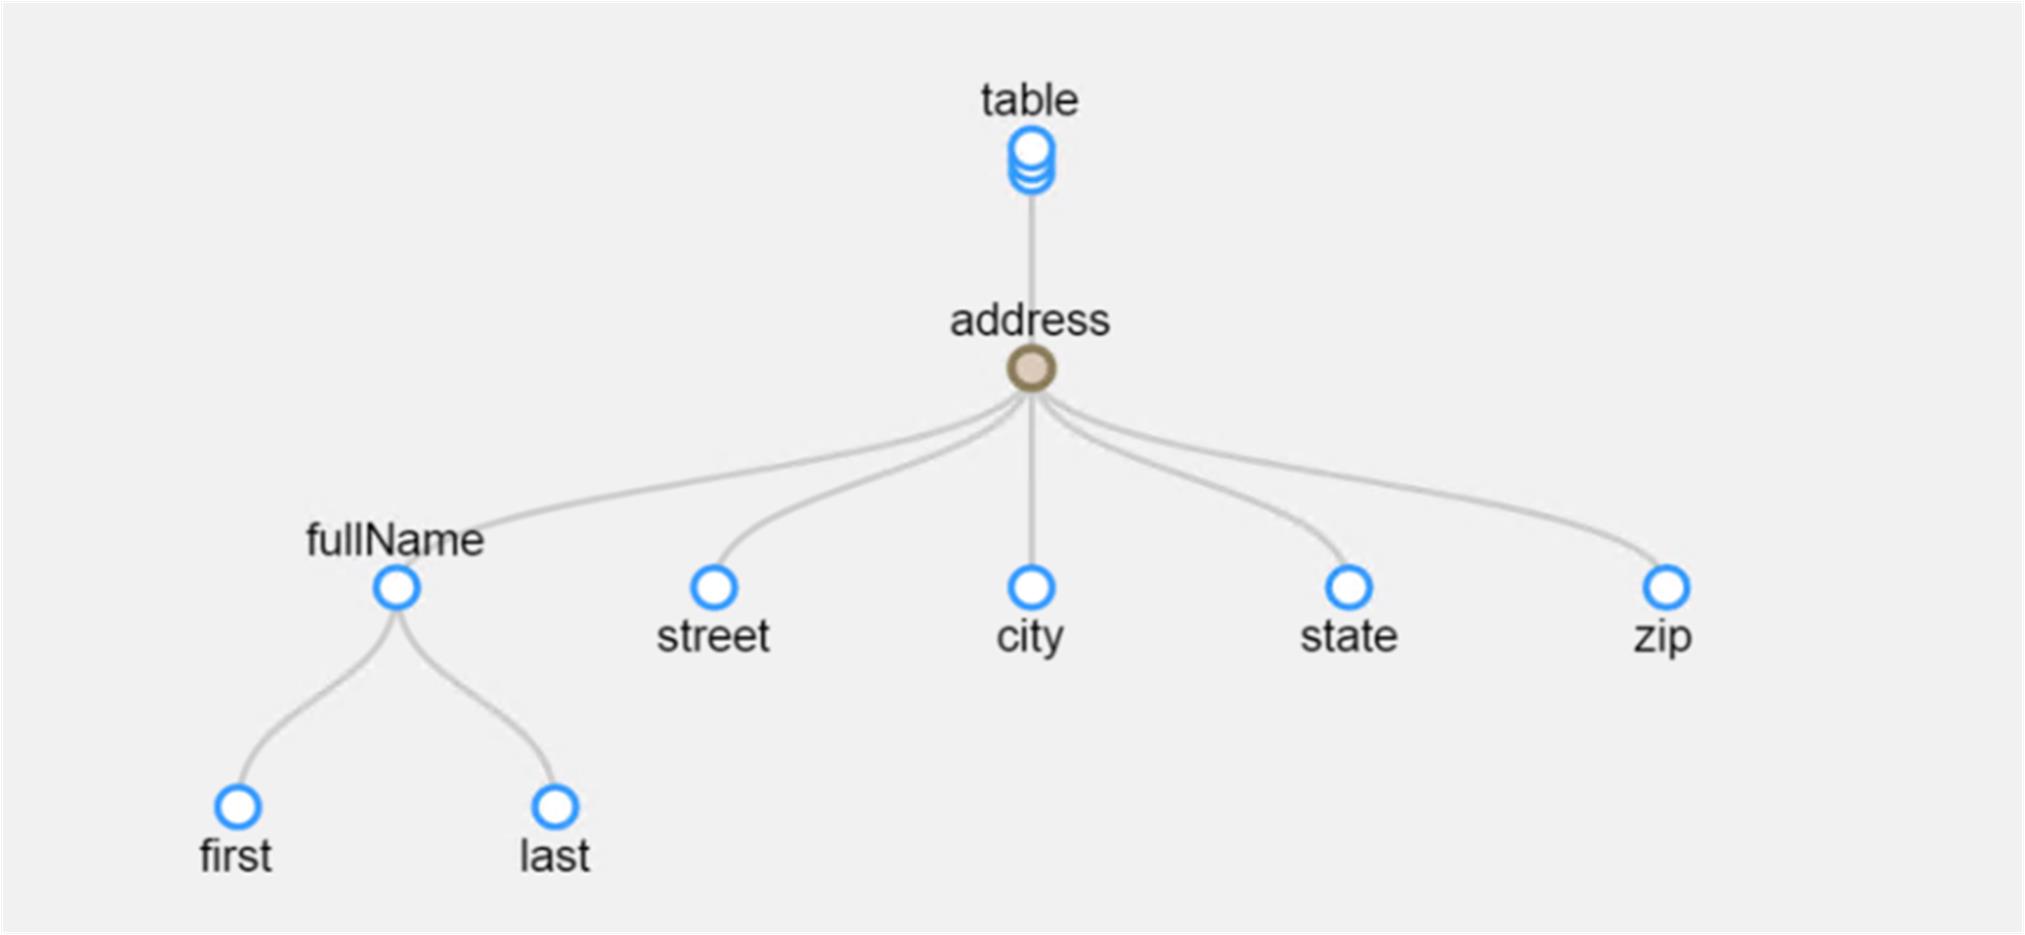 この図は、ノードの階層を含む検出された構造の例を示しています。一番上の行では、tableはaddressの親です。2行目の行では、addressはfullName、street、city、state、およびzipの親です。3行目では、fullNameは最初と最後の親です。 
			 